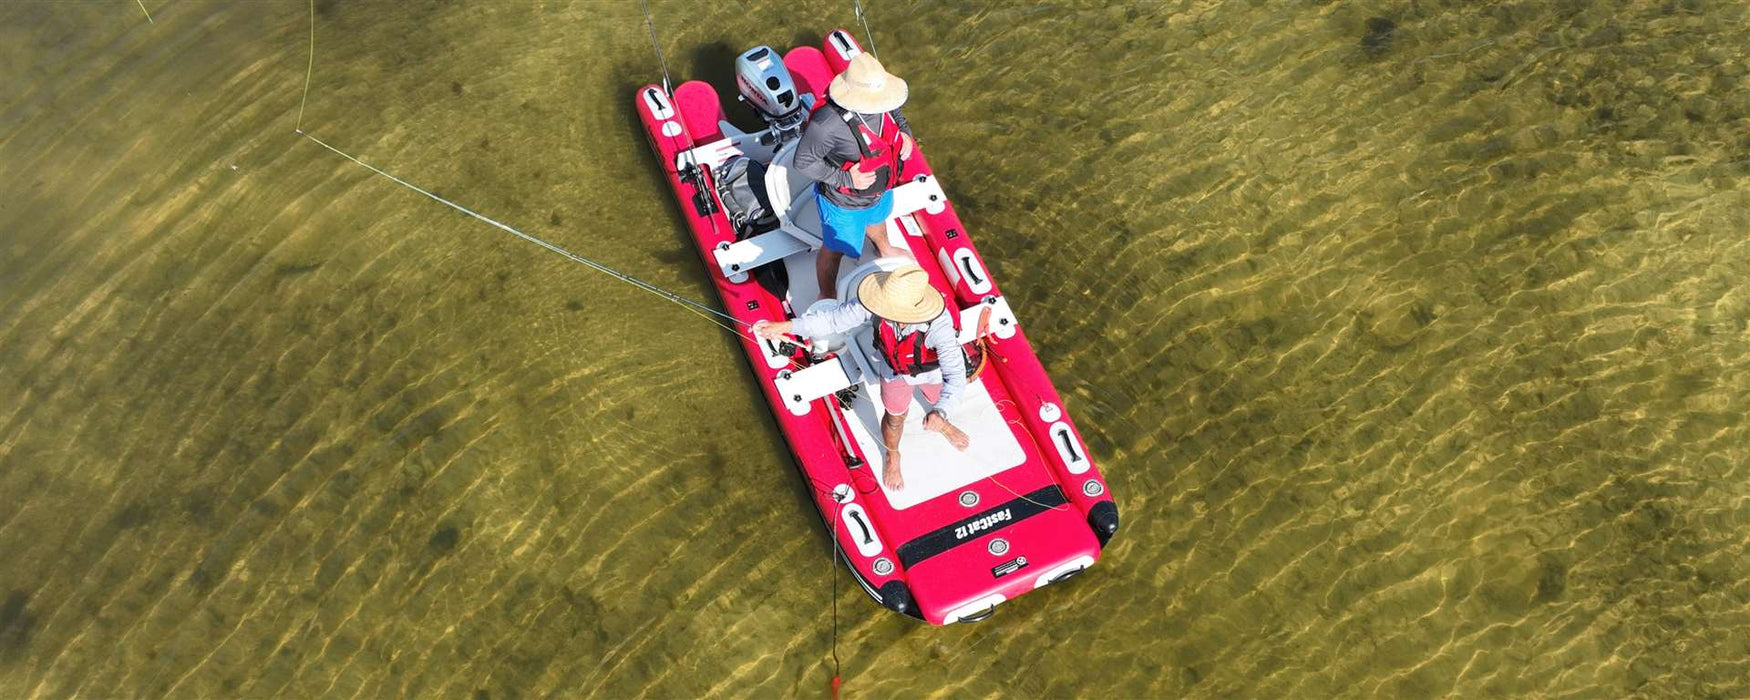 Sea Eagle FastCat12™ Catamaran Inflatable Boat